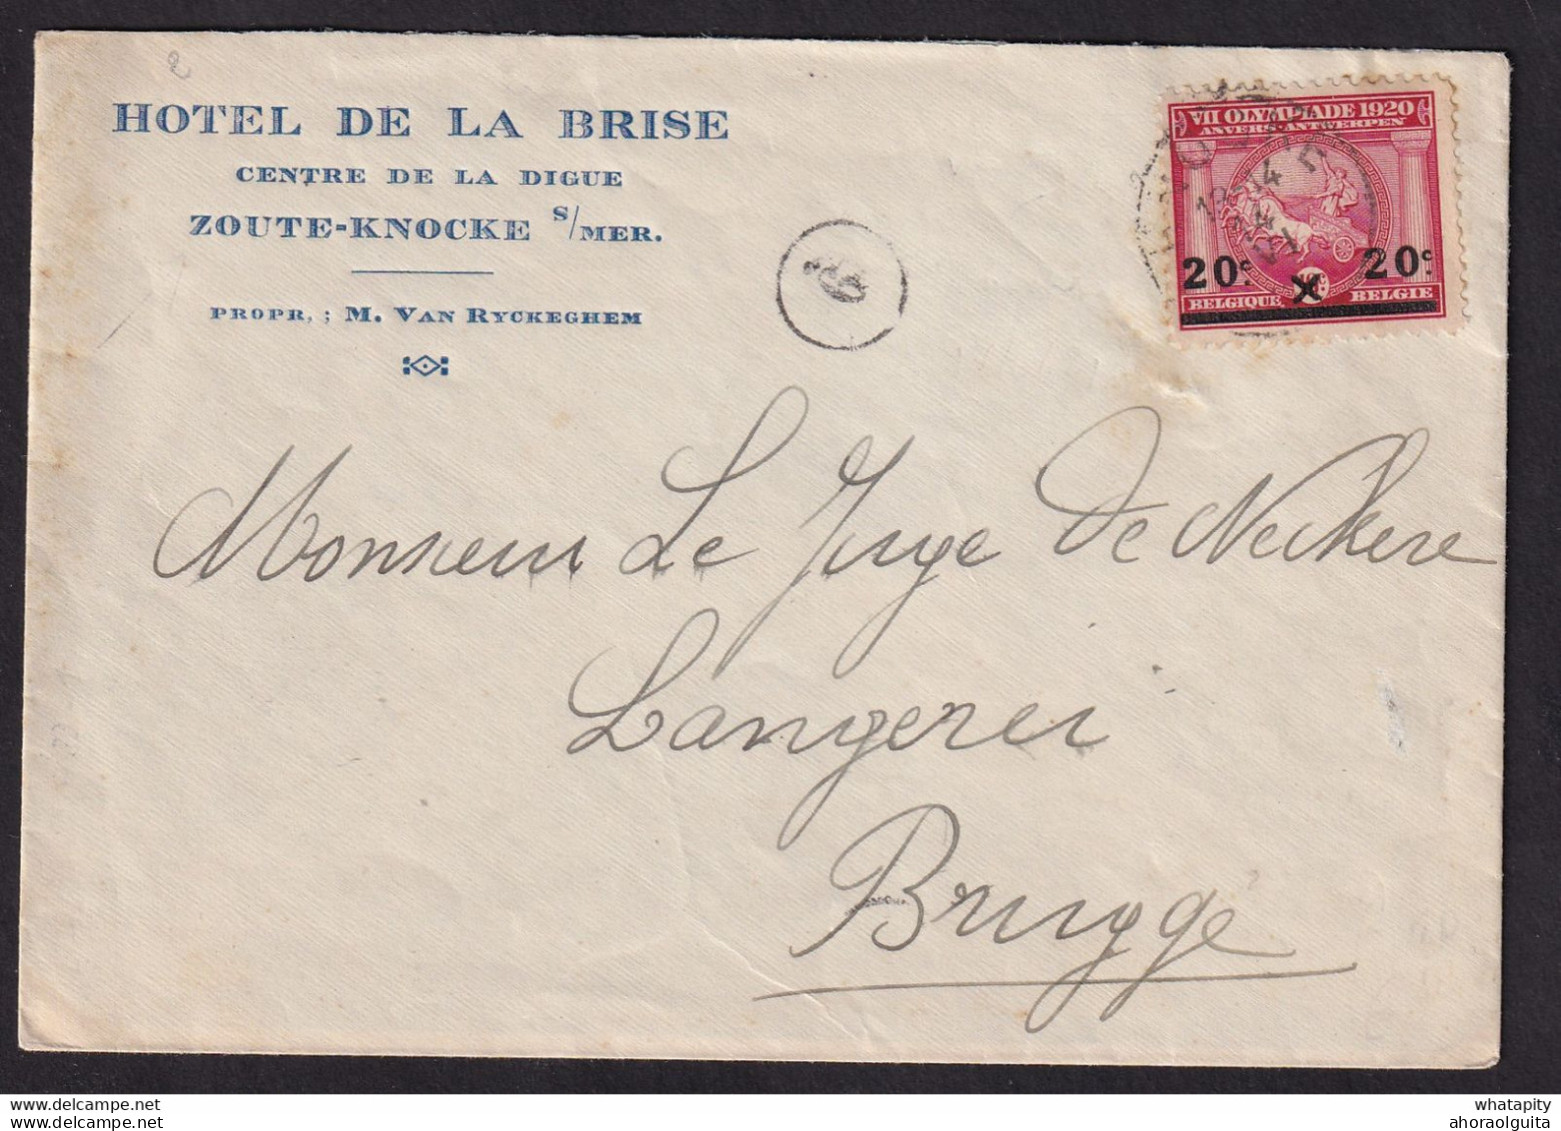 DDBB 577 - Enveloppe Illustrée TP Jeux Olympiques KNOKKE 1921 Vers BRUGGE - Entete Et Gravure Hotel De La Brise, Digue - Verano 1920: Amberes (Anvers)